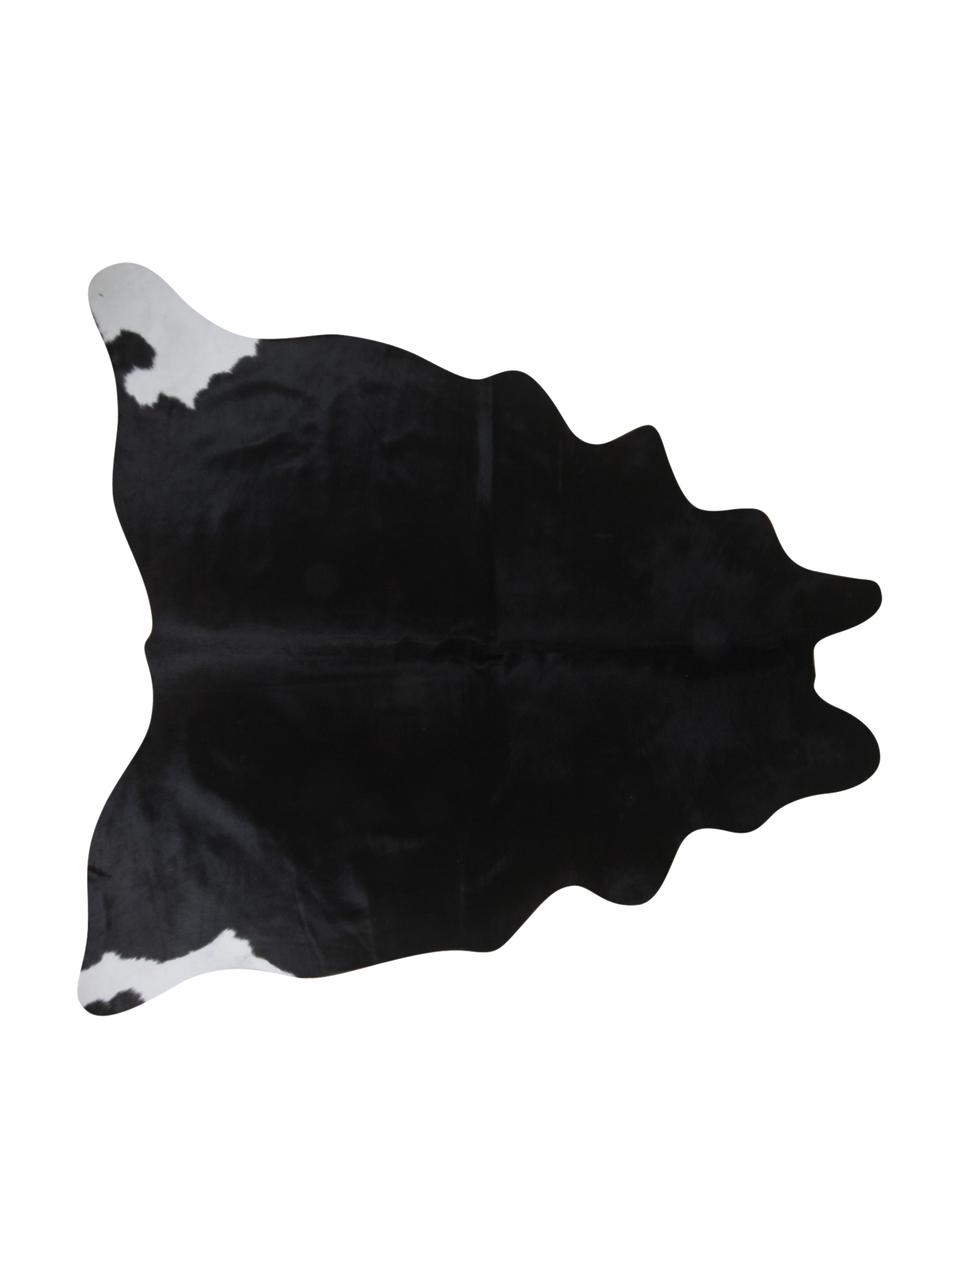 Tappeto in pelle bovina bianco e nero Pisces, Pelle di mucca, Bianco con macchie nere, Pelle di mucca unica 967, 160 x 180 cm